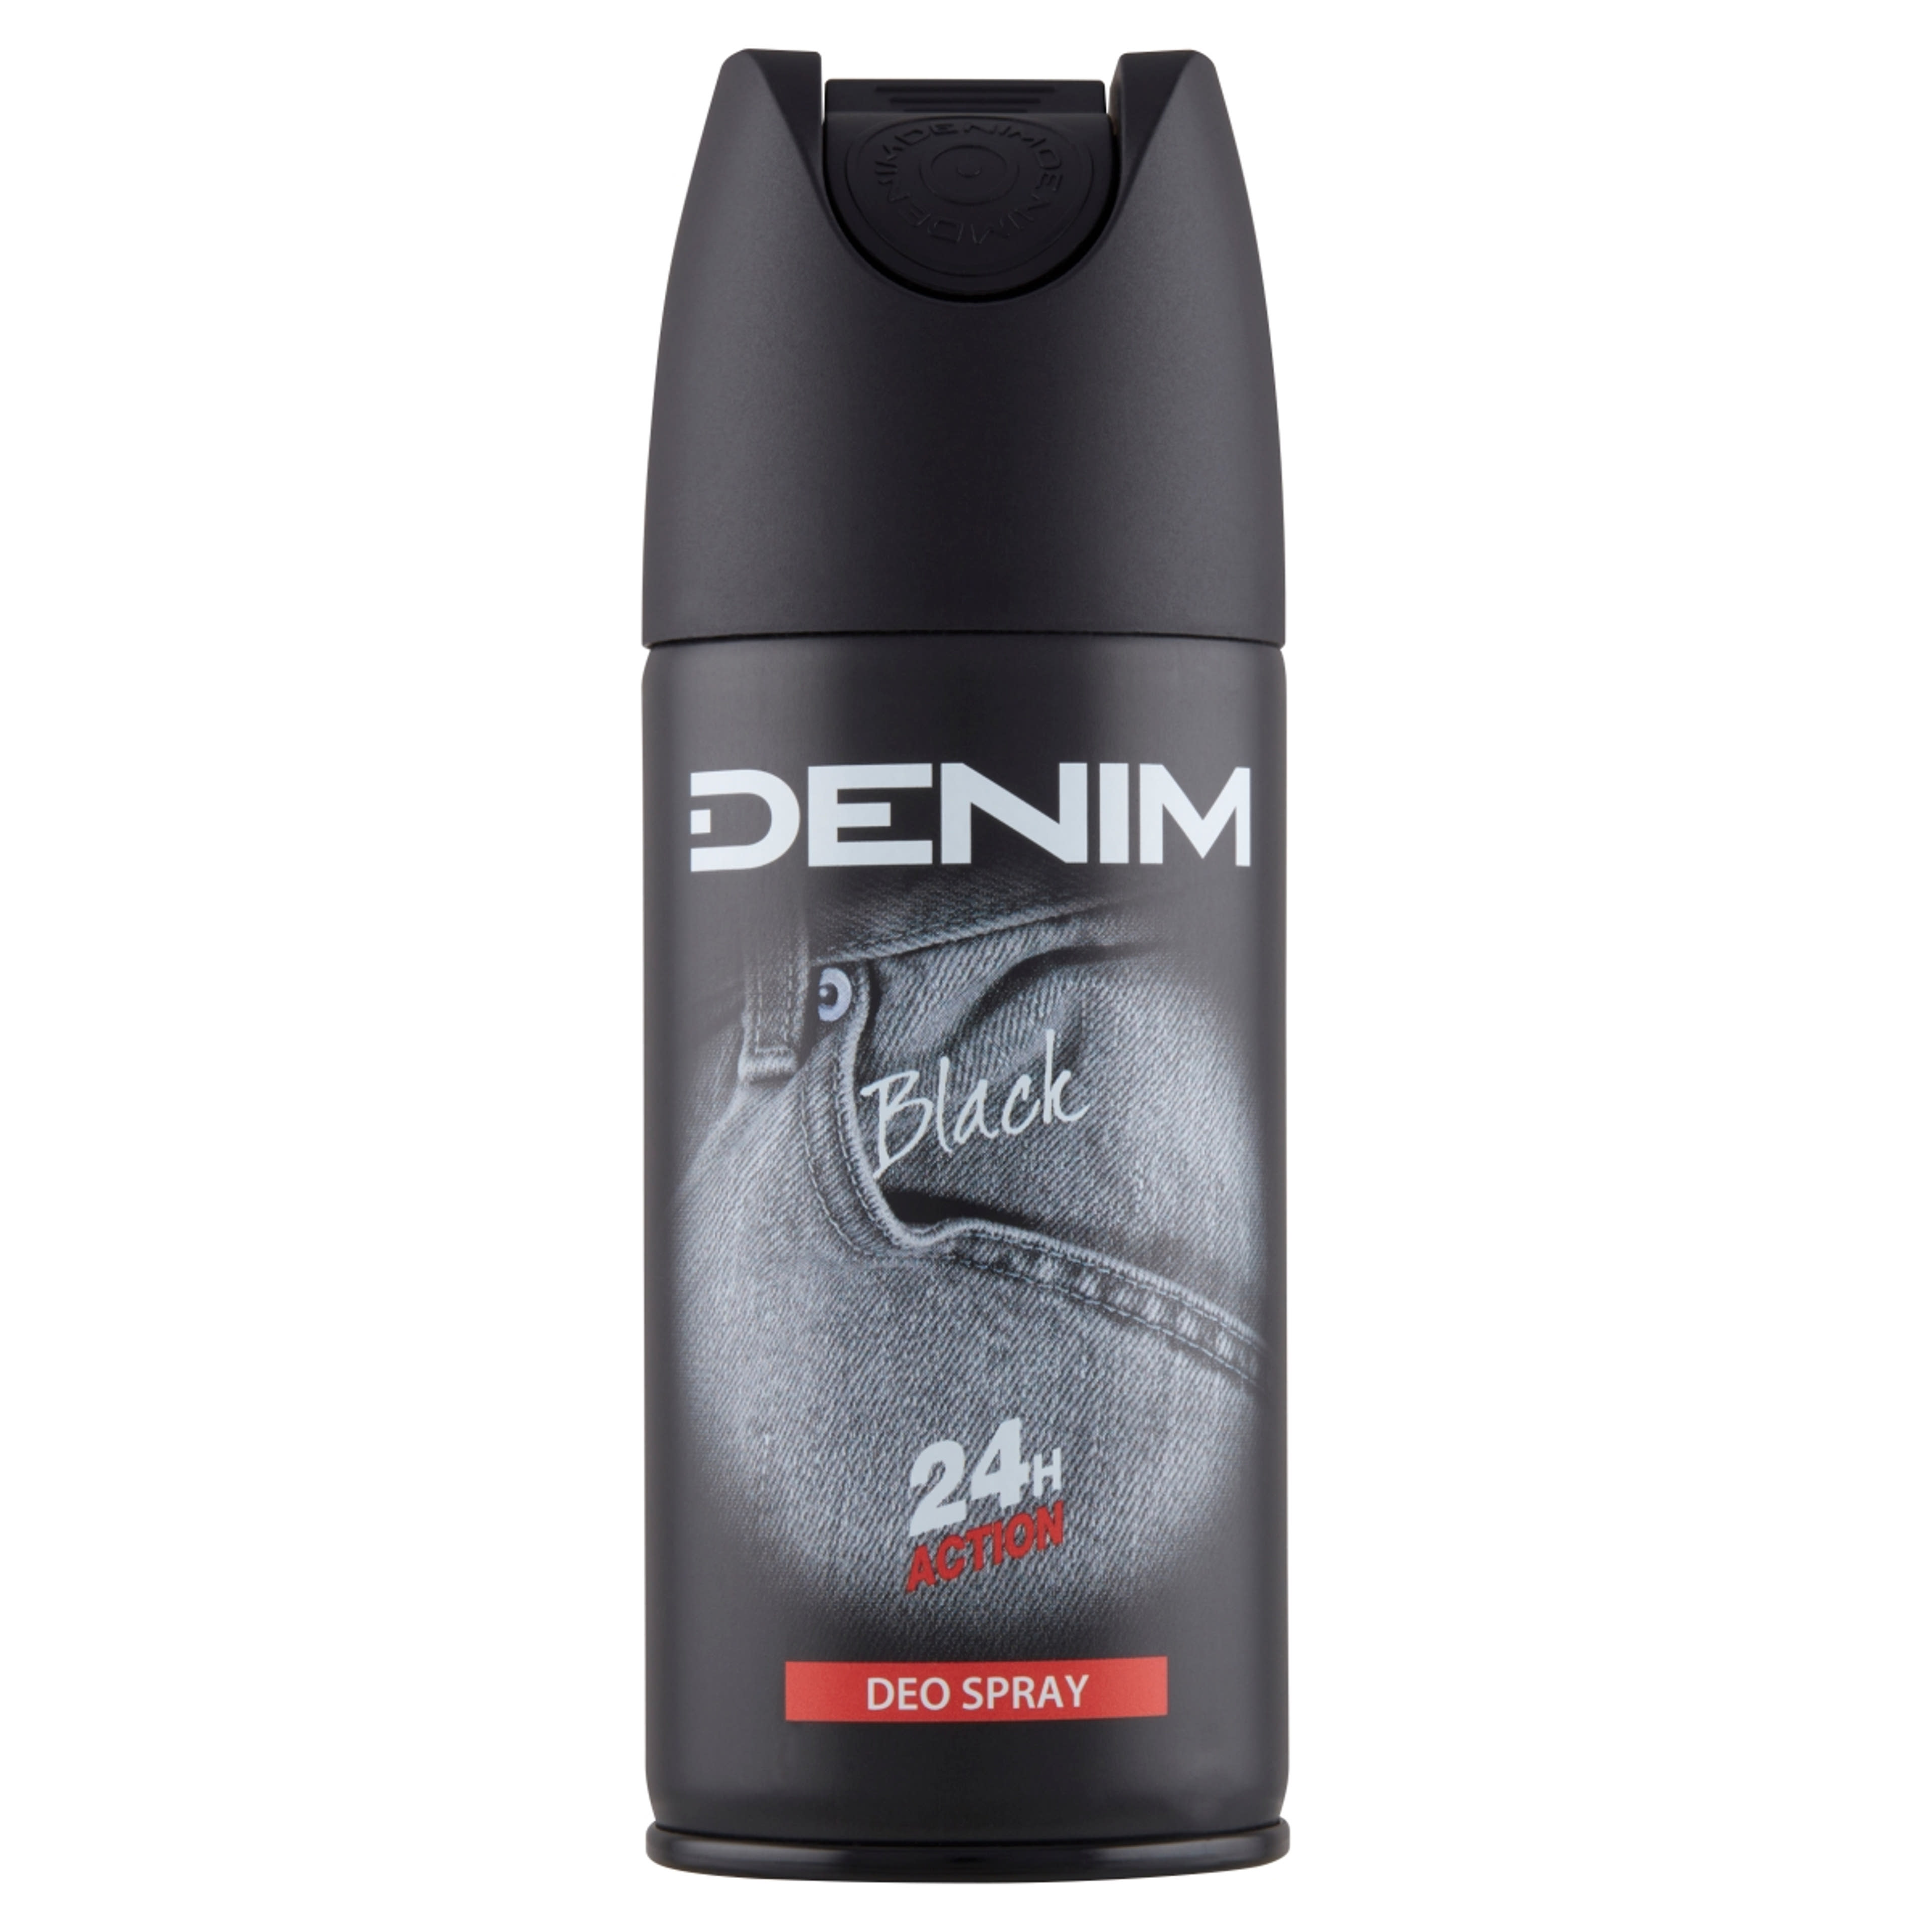 Denim Black dezodor - 150 ml